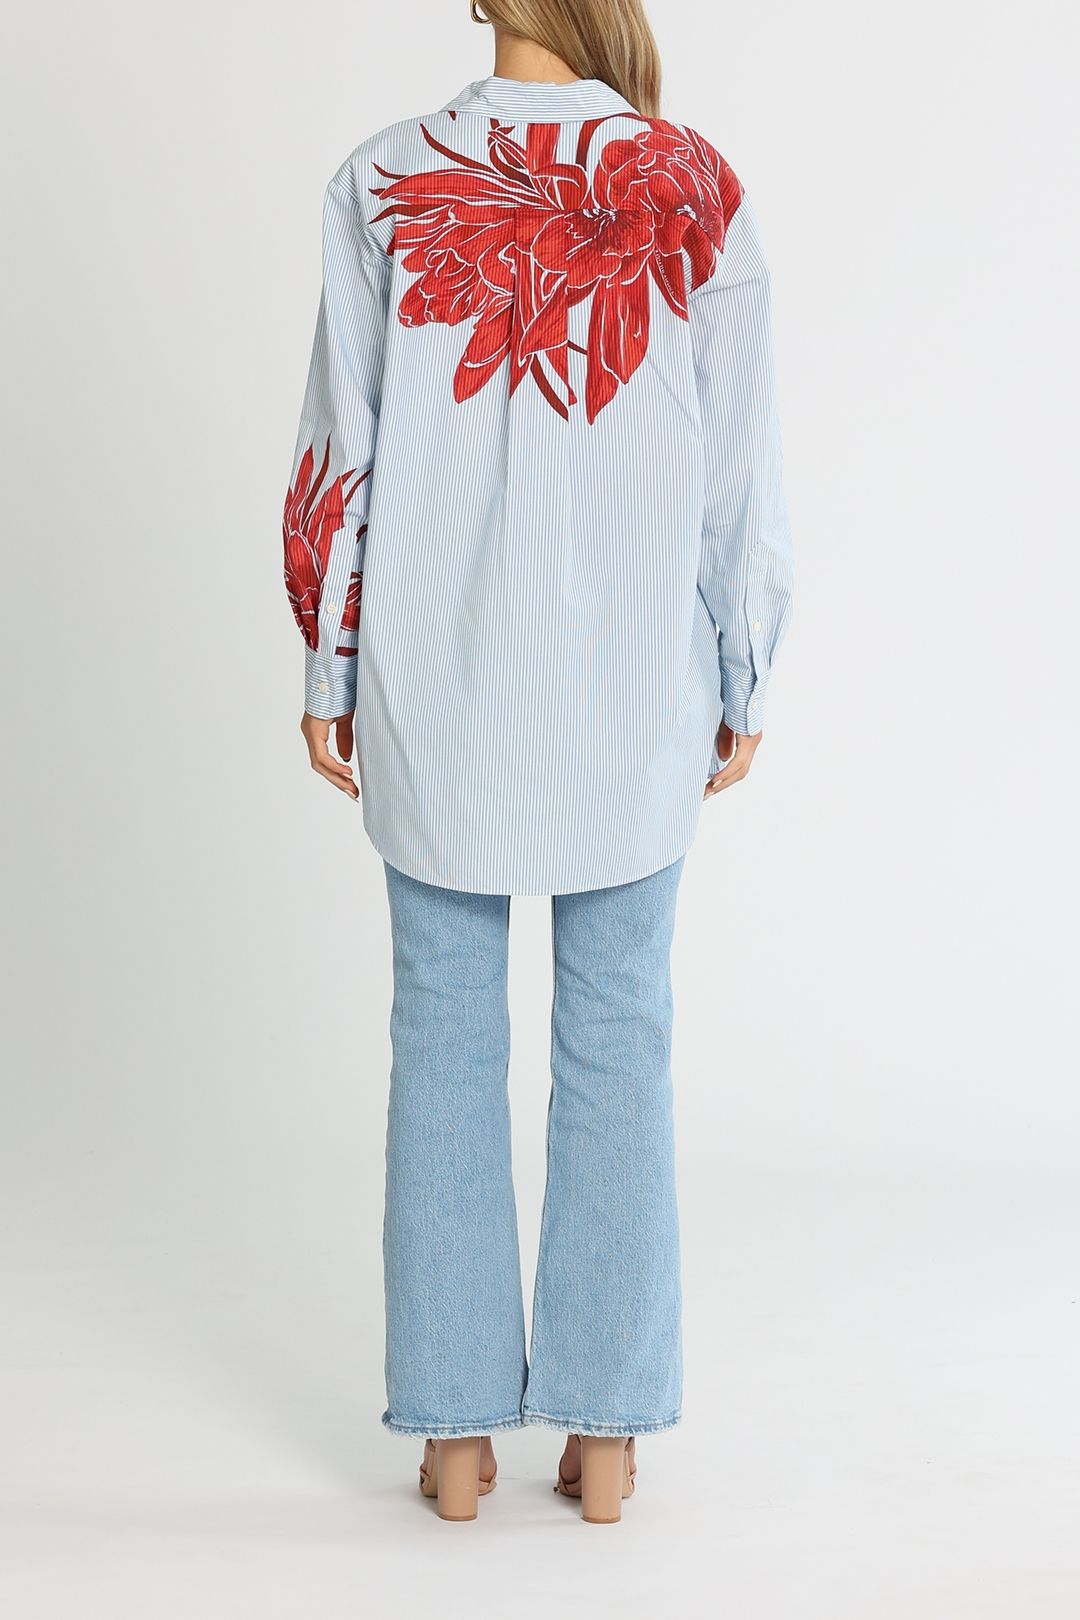 Tommy Hilfiger Co Floral Stp Oversized Shirt Ls Island Flower Stripe